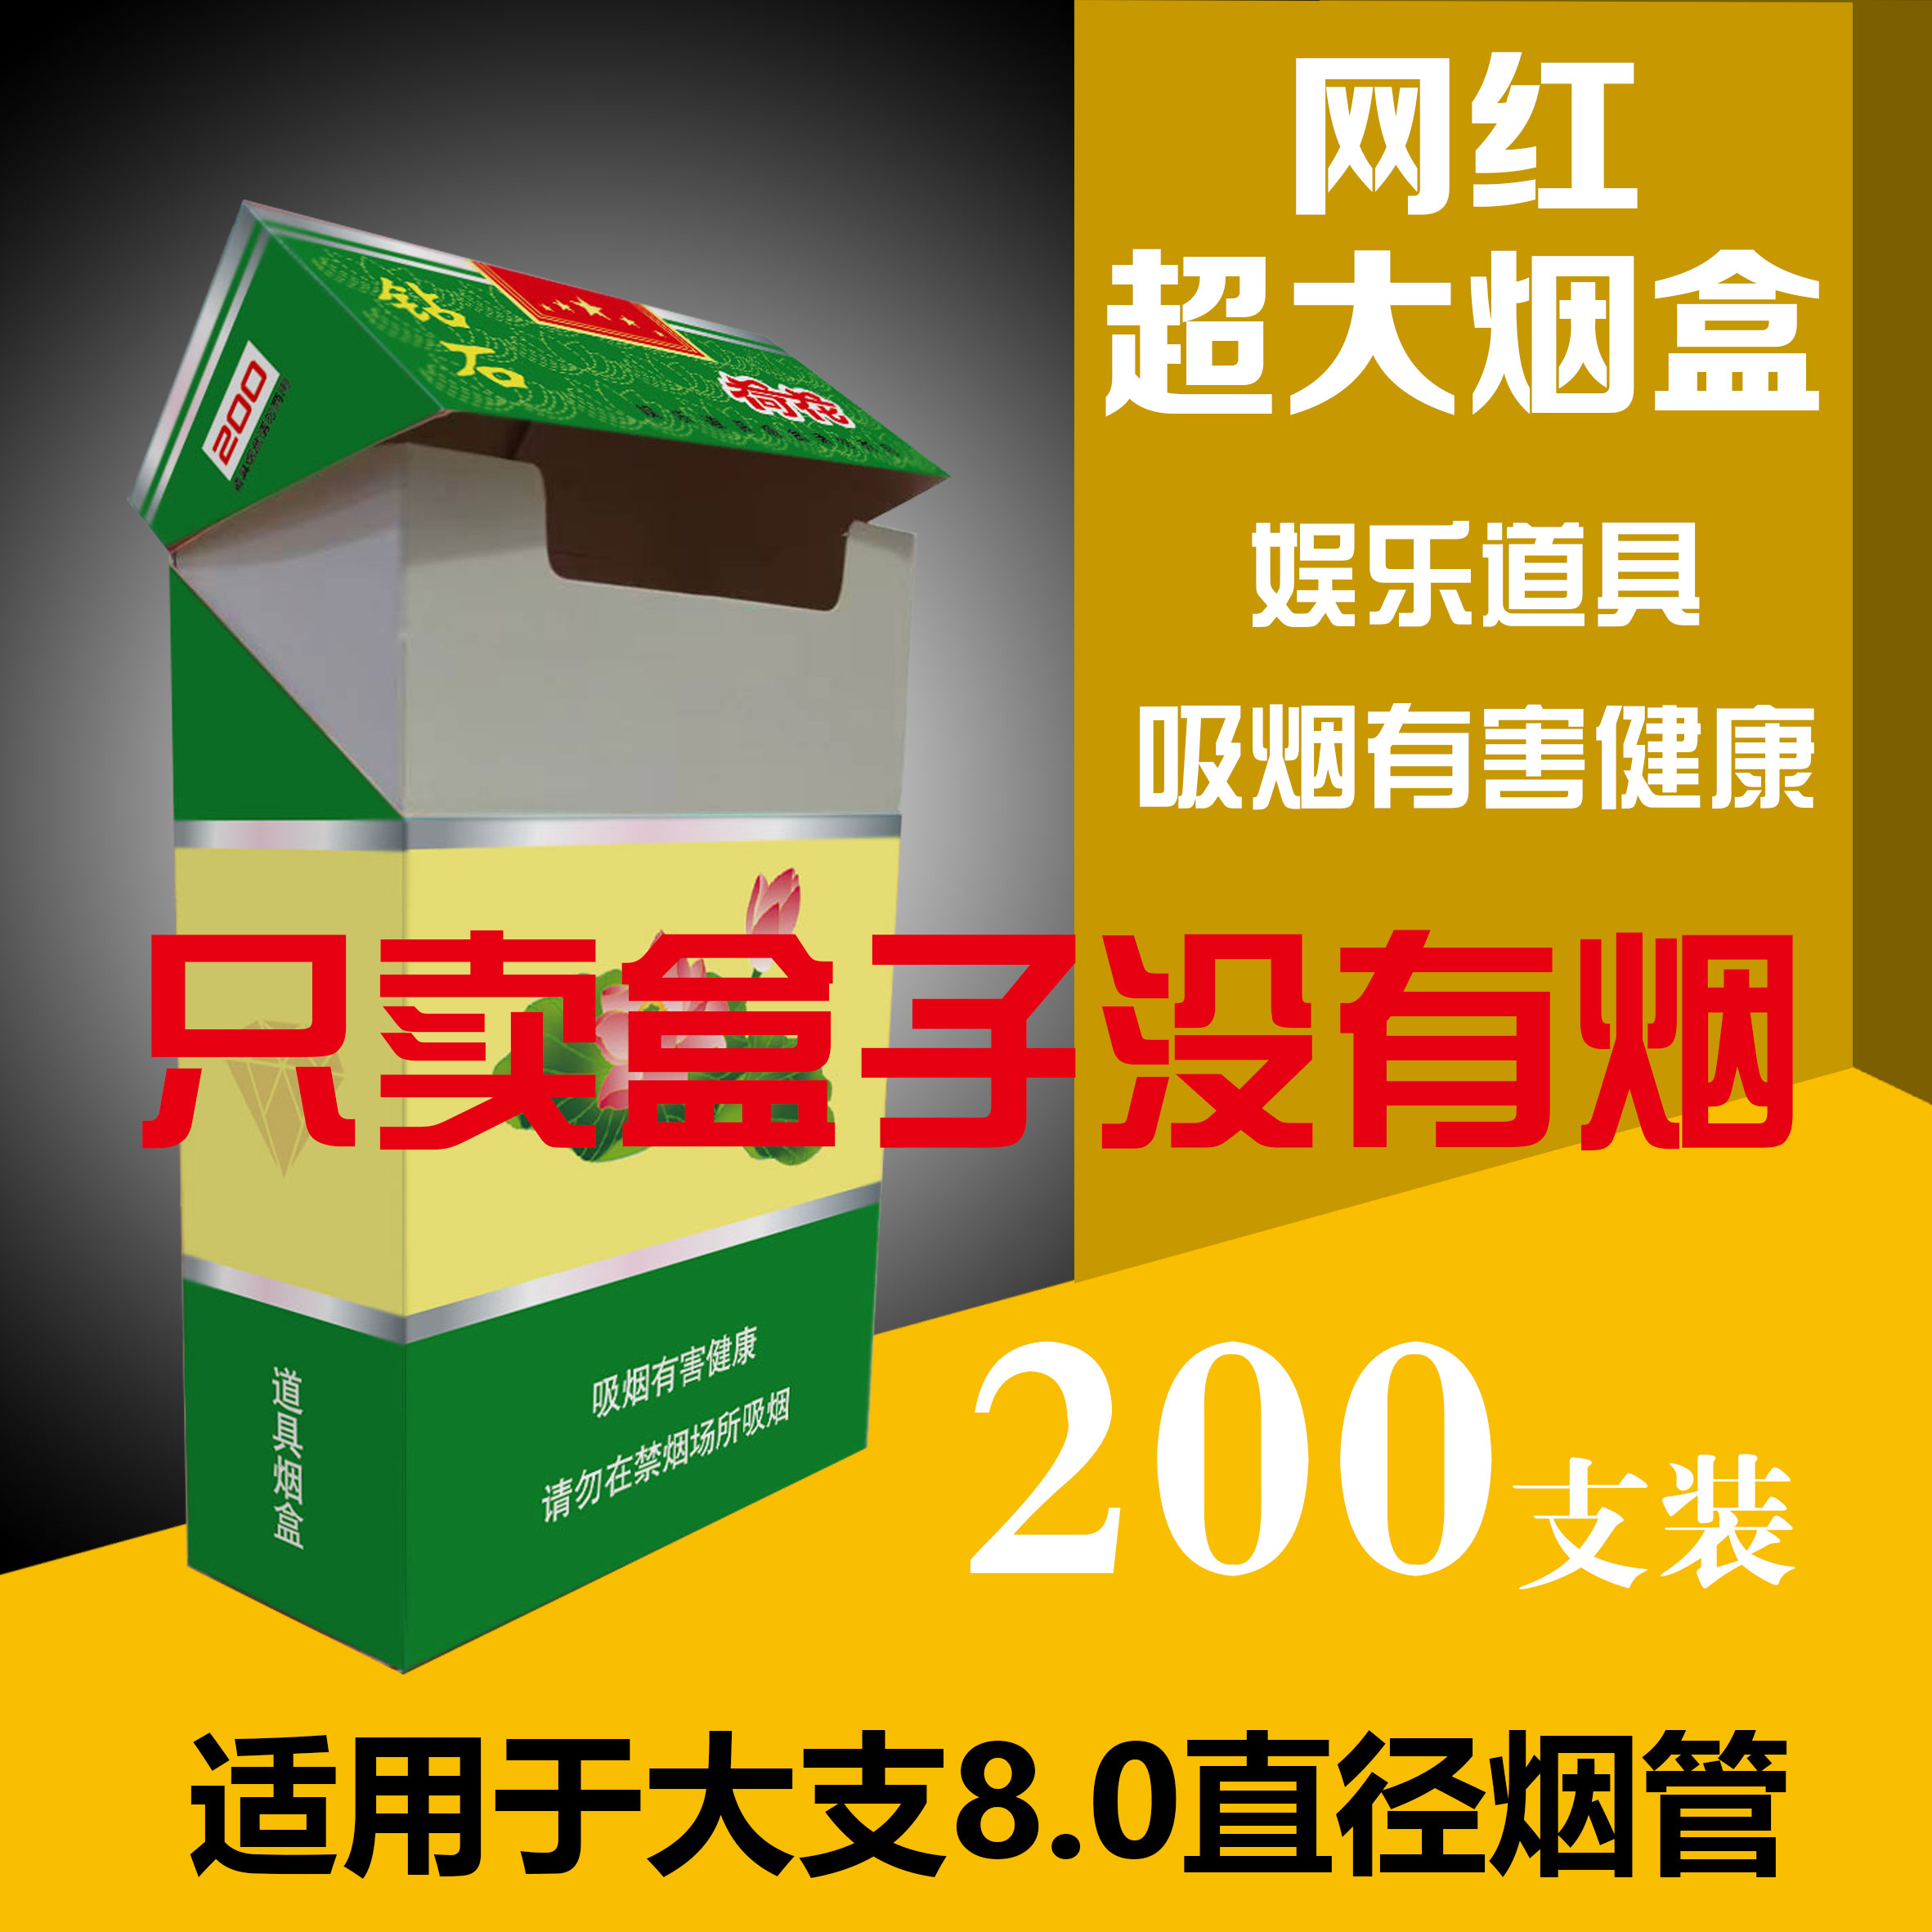 网红超大烟盒一次性纸质创意烟盒搞怪个性便携式防压DY同款道具盒